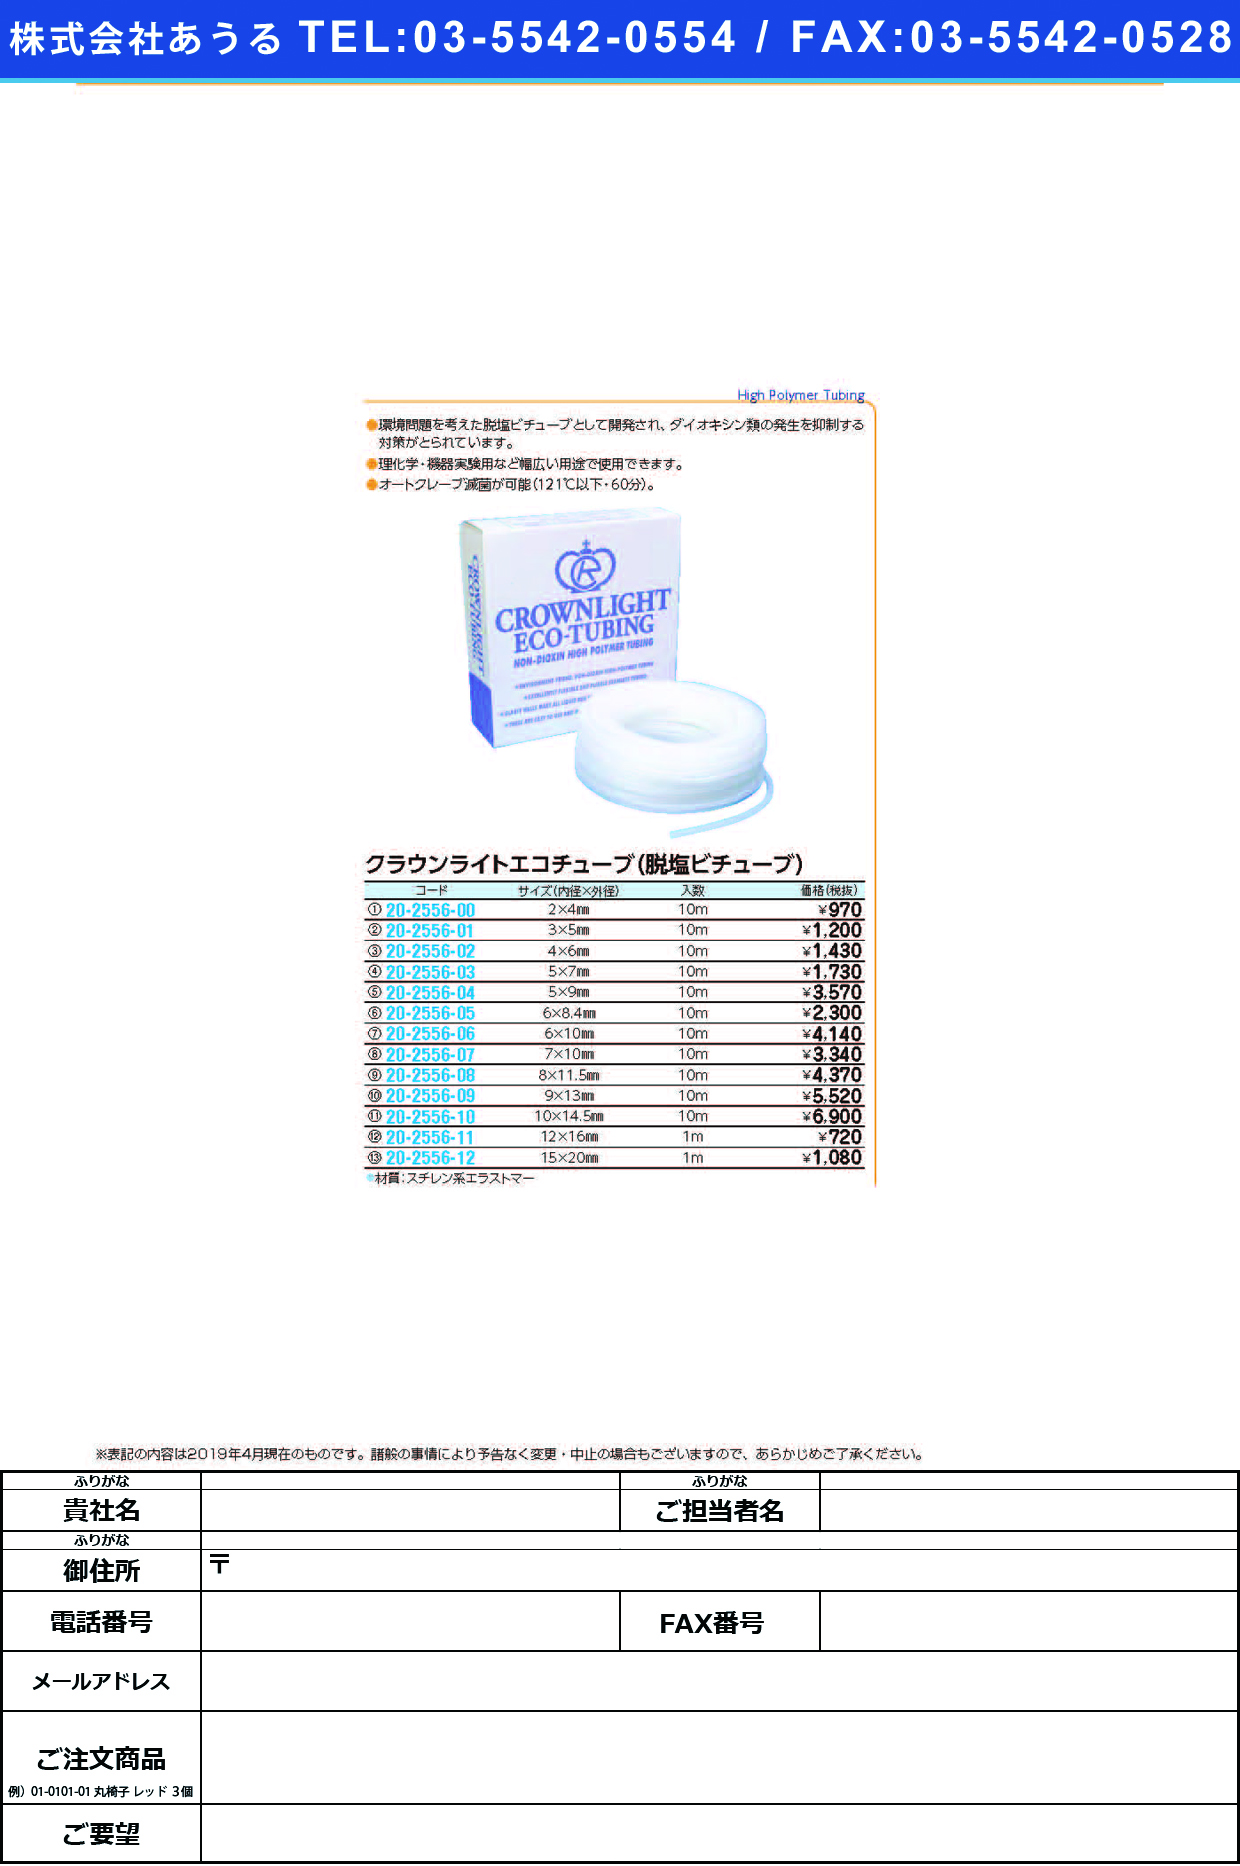 (20-2556-06)クラウンライトエコチューブ 6.0X10.0(10Mｲﾘ) ｸﾗｳﾝﾗｲﾄｴｺﾁｭｰﾌﾞ【1袋単位】【2019年カタログ商品】